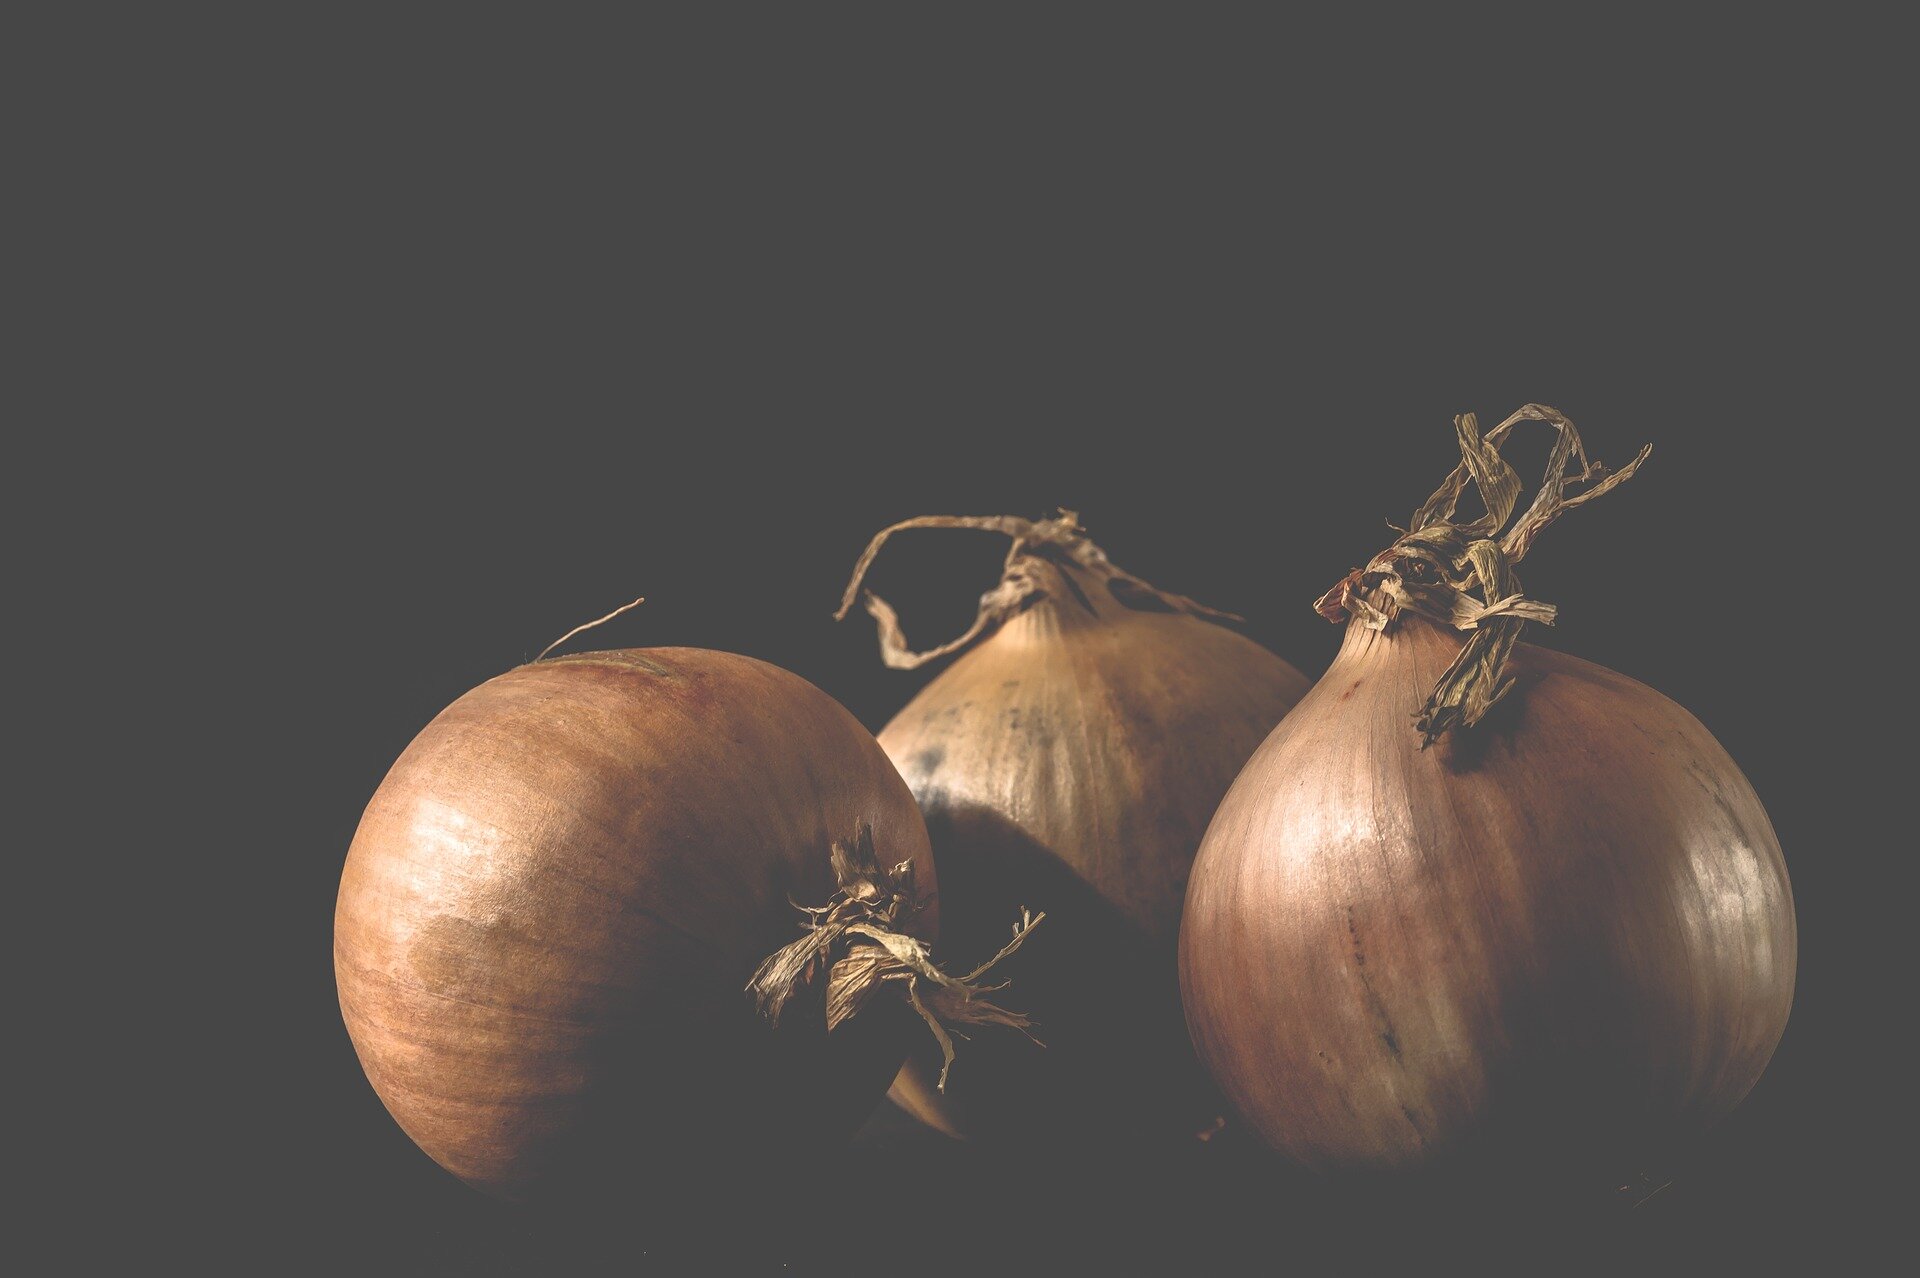 Onion domain and kingdom